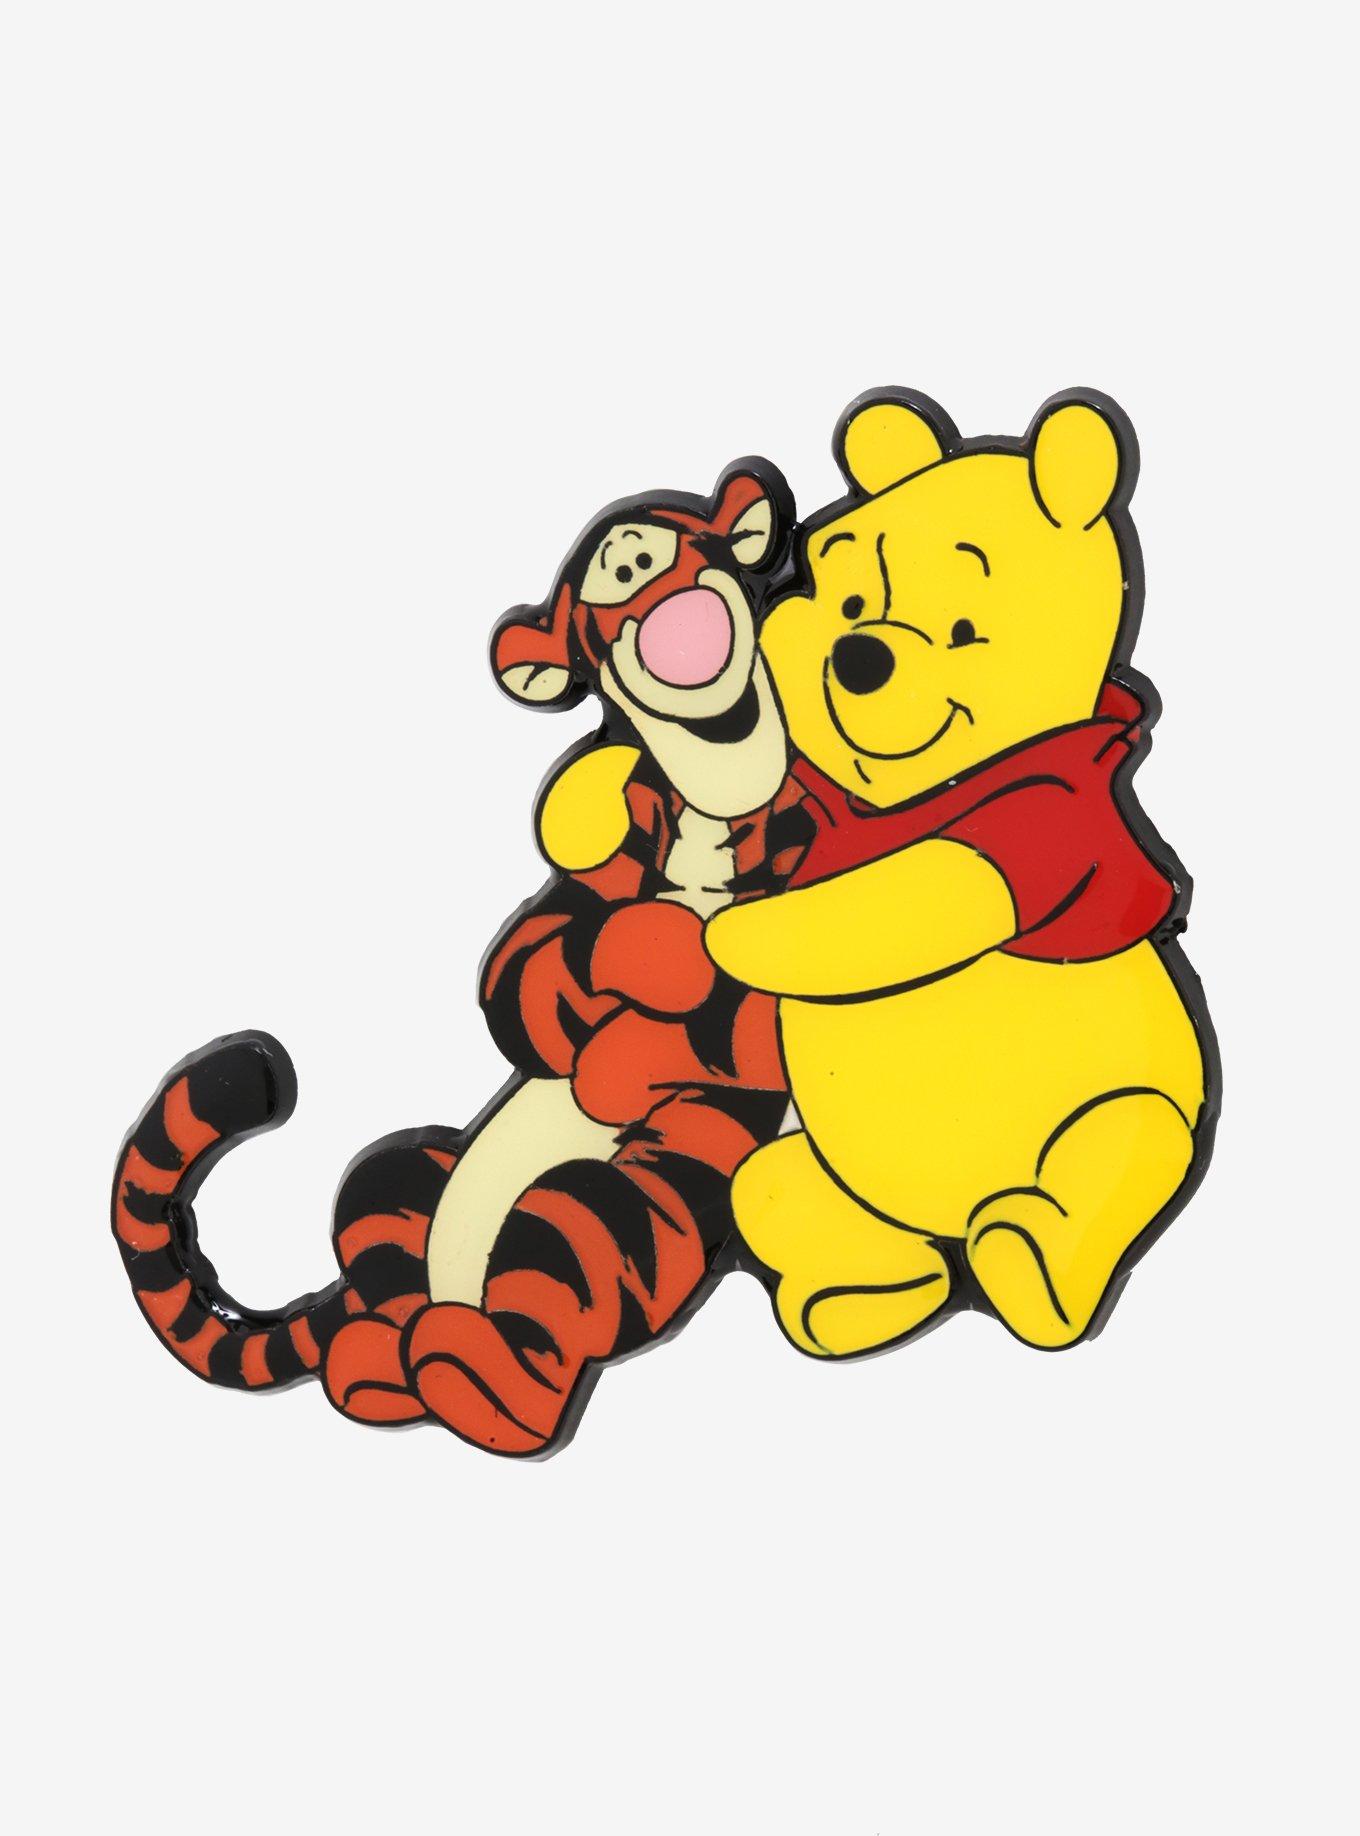 baby pooh and tigger hugging